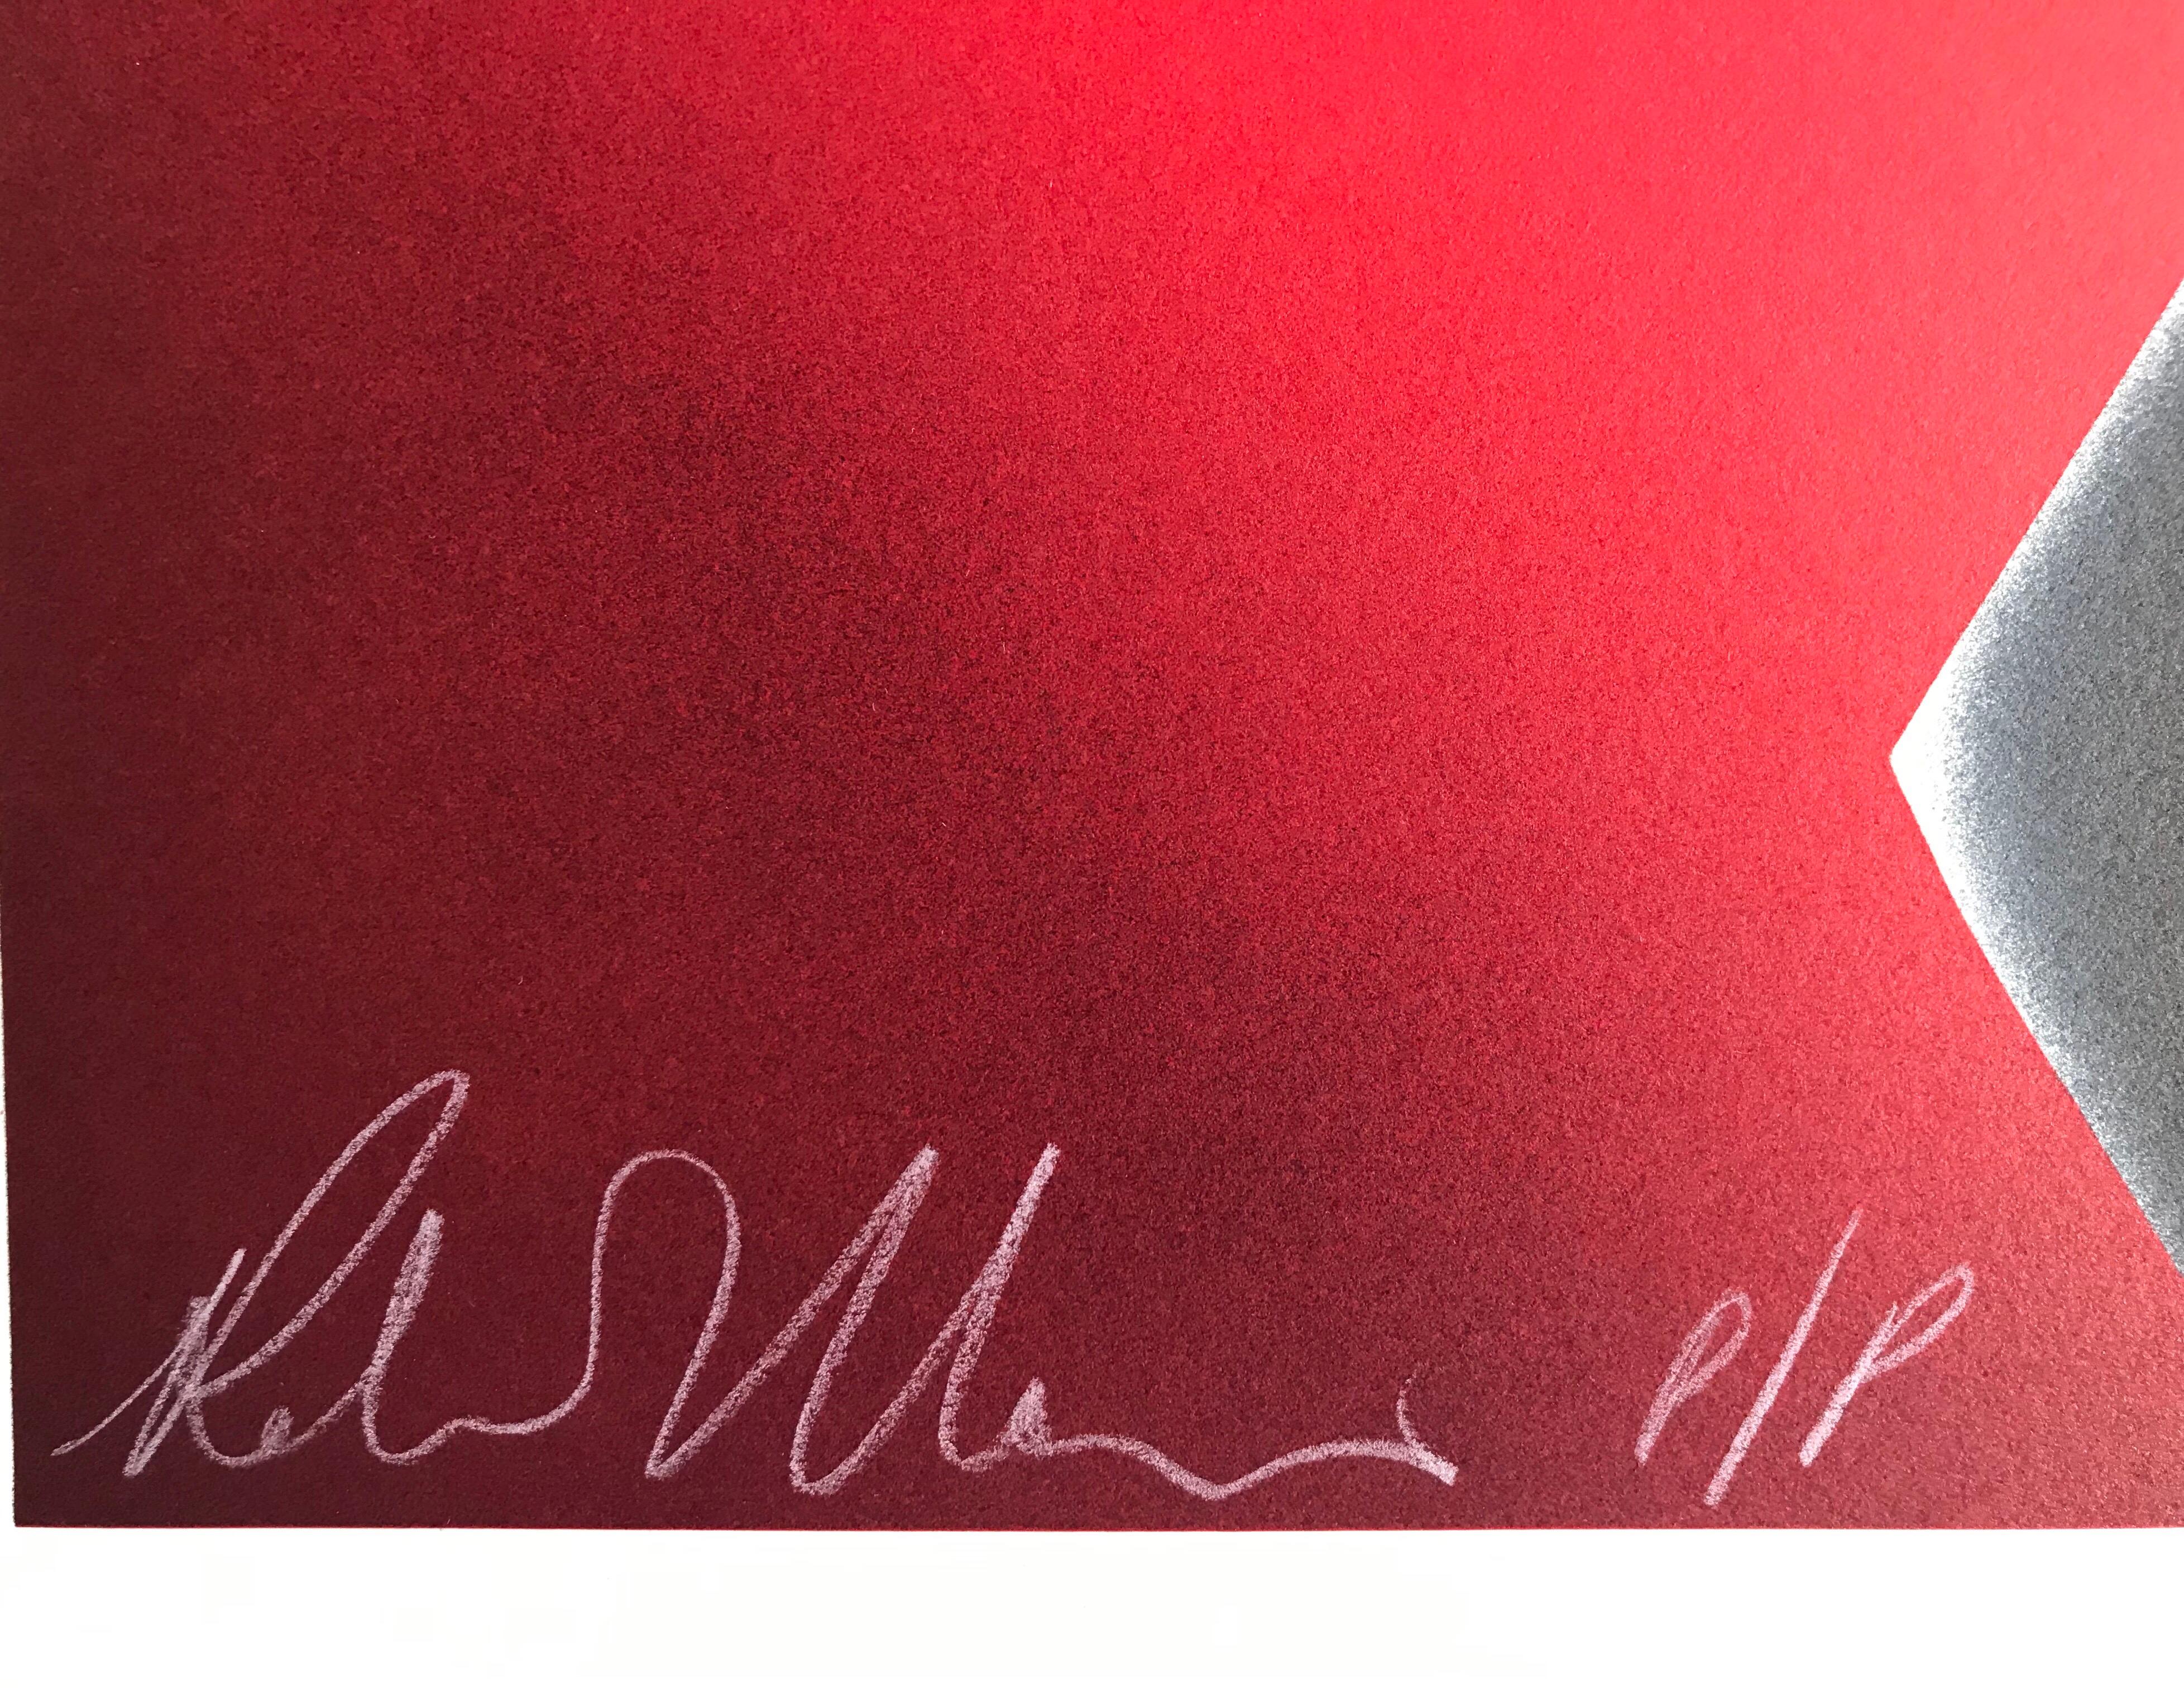 RED HOT ist eine handgefertigte Original-Lithografie der Künstlerin Robin Morris in limitierter Auflage, gedruckt im Handlithografie-Verfahren auf archivfähigem Coventry-Papier, 100% säurefrei. Frau Morris nutzt ihren charakteristischen